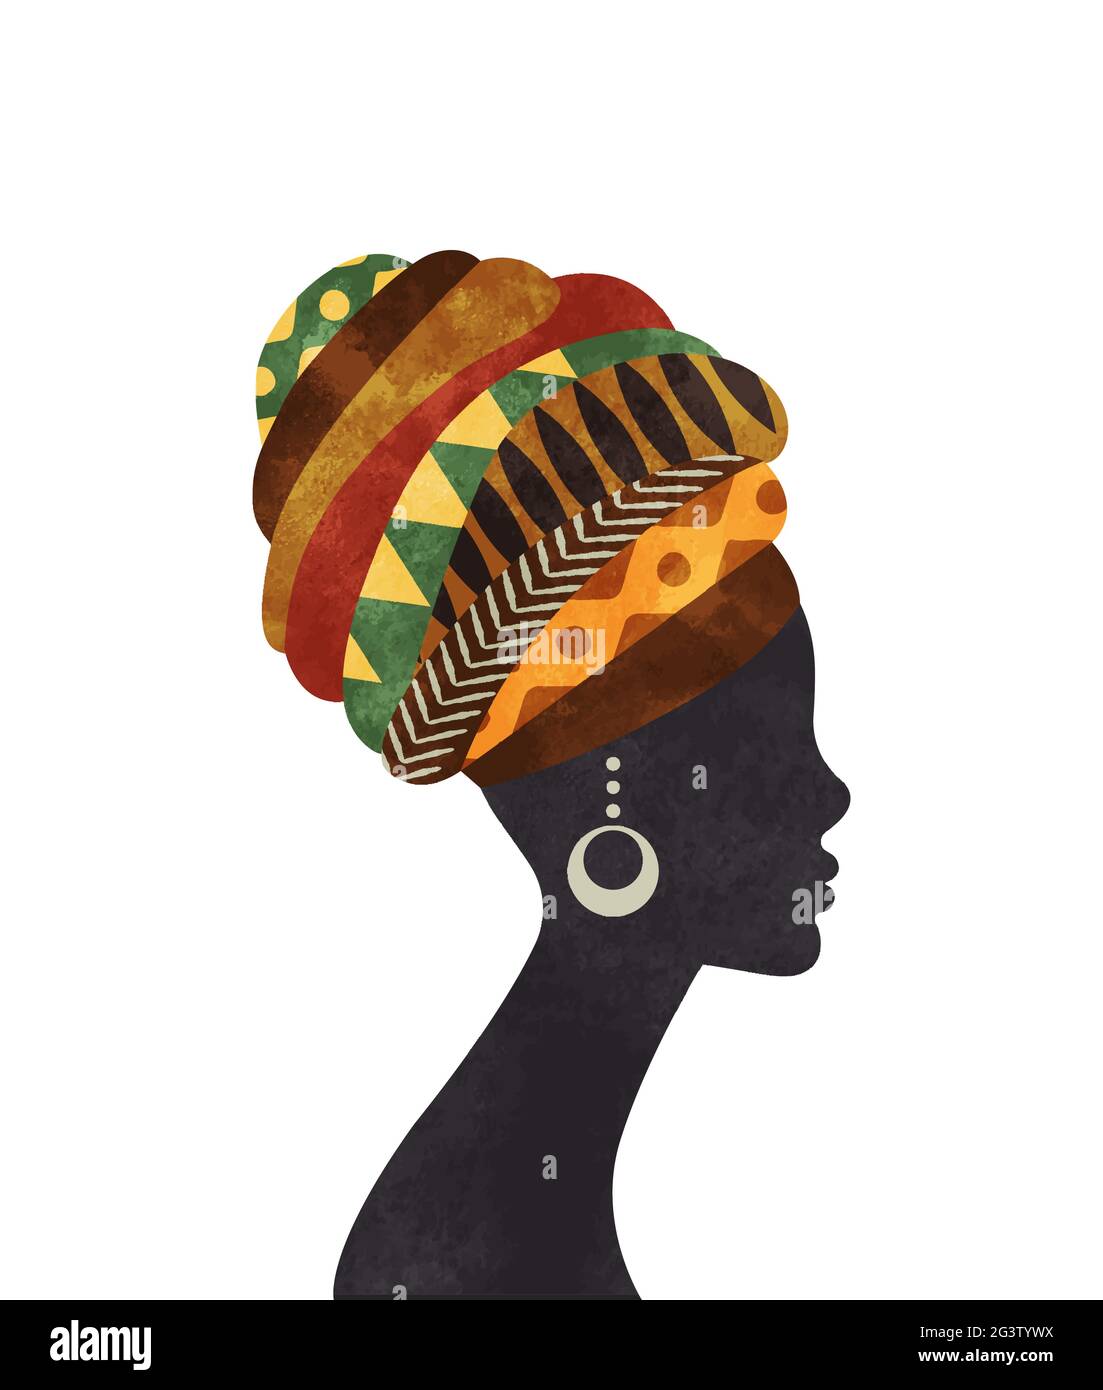 Schöne afrikanische Kultur Frau mit traditionellen Turban in Aquarell-Malerei Textur. Black africa Mädchen Gesicht Silhouette auf isolierten Hintergrund. Stock Vektor